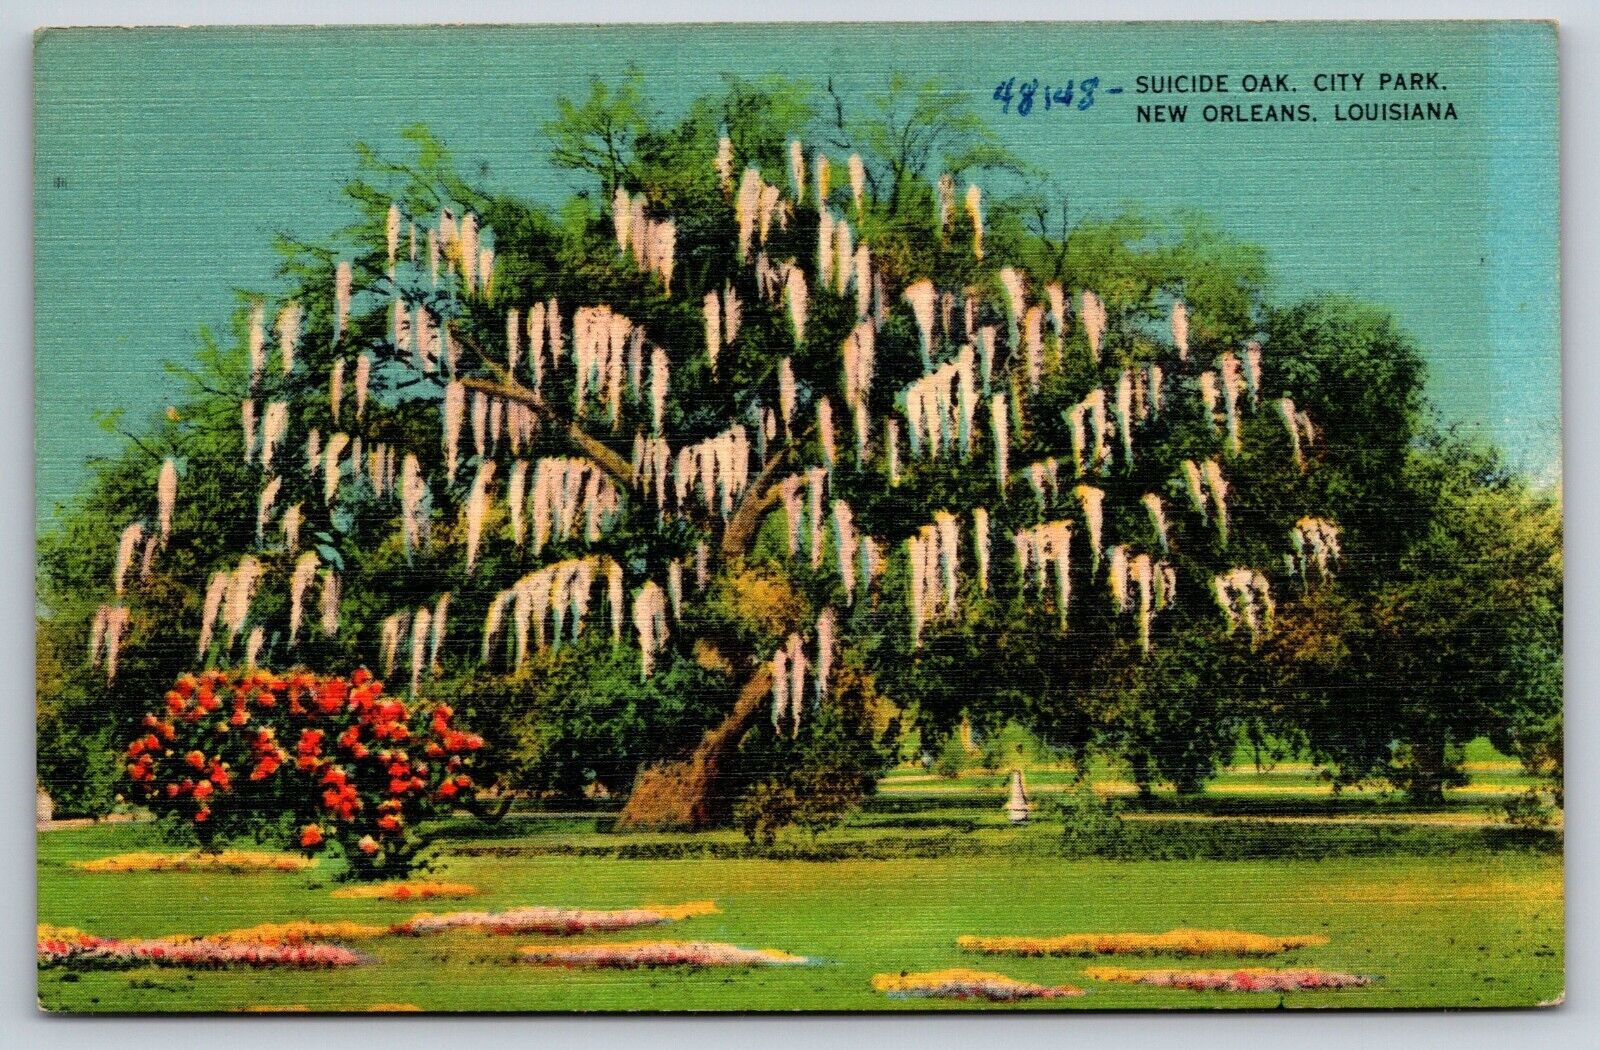 Suicide Oak, City Park, New Orleans, Louisiana Vintage Postcard